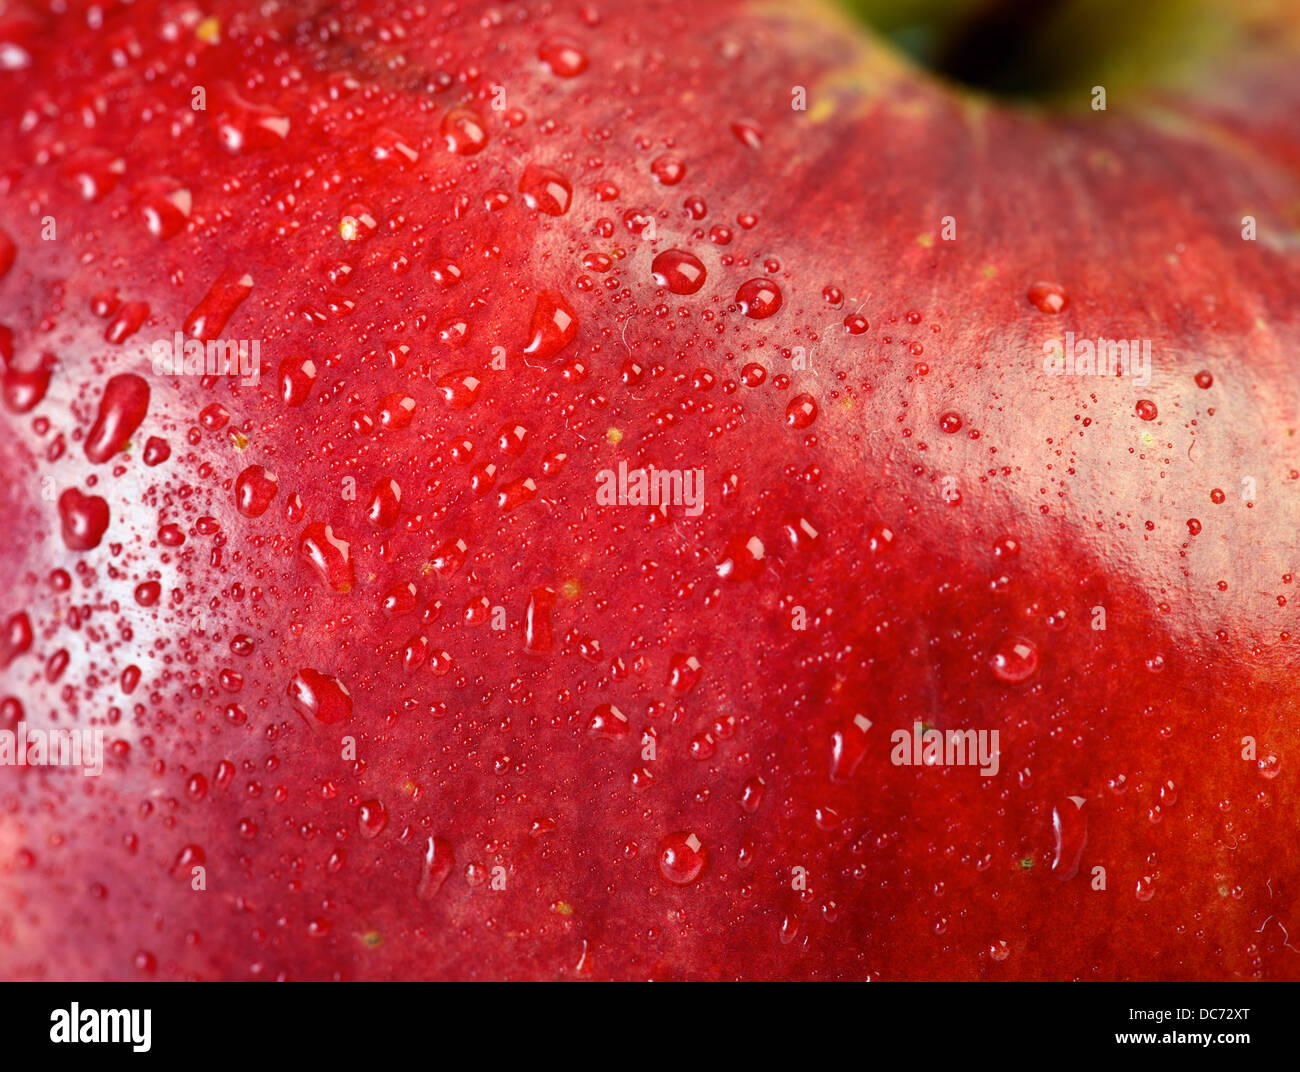 Red Apple macro avec les gouttes d'eau pour des toiles Banque D'Images